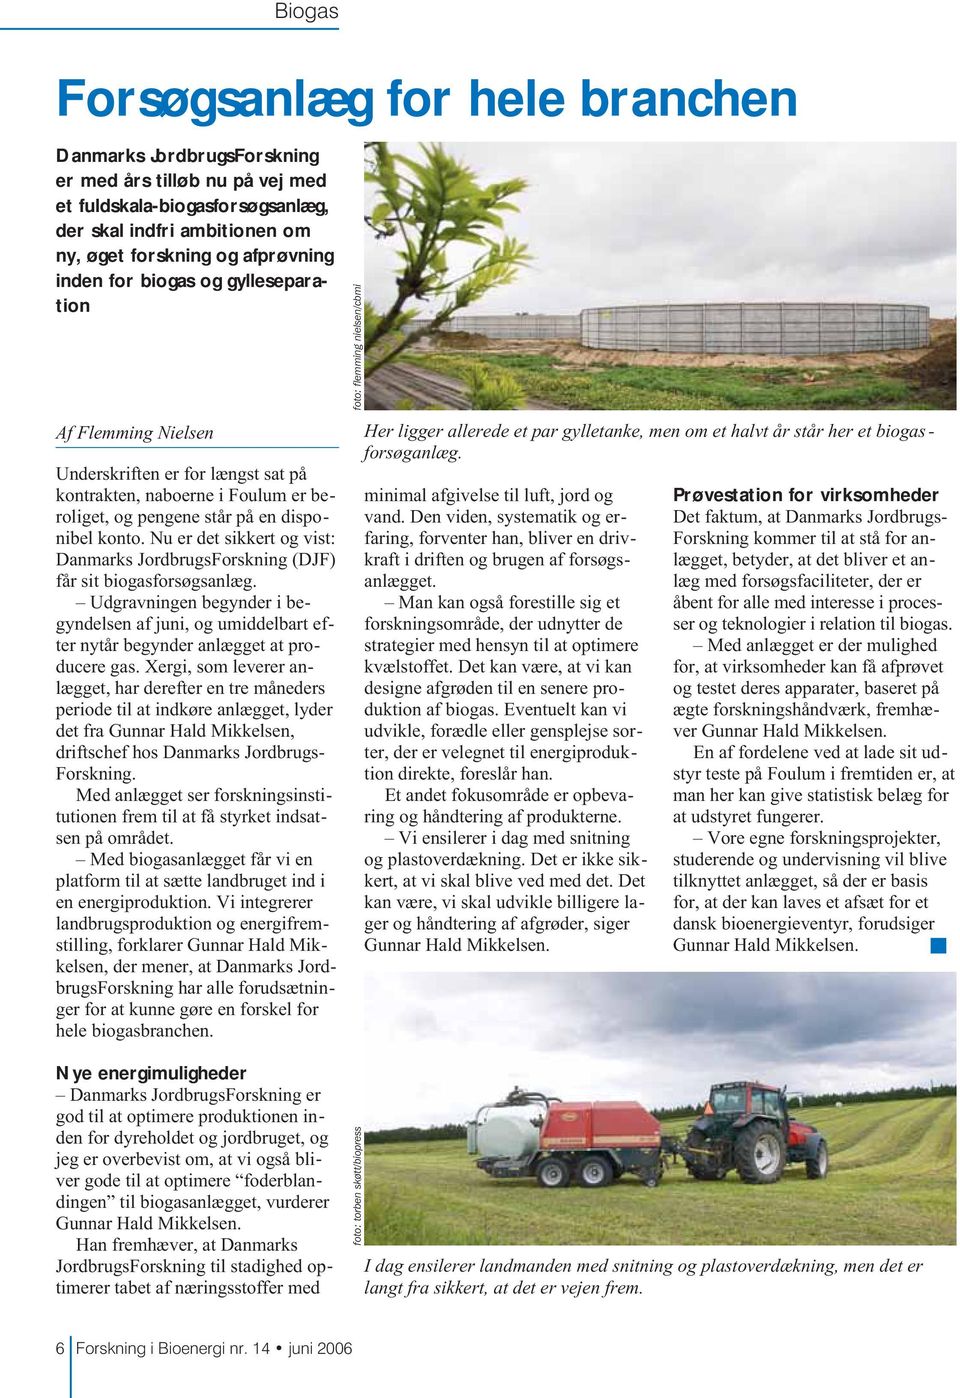 Nu er det sikkert og vist: Danmarks JordbrugsForskning (DJF) får sit biogasforsøgsanlæg. Udgravningen begynder i begyndelsen af juni, og umiddelbart efter nytår begynder anlægget at producere gas.